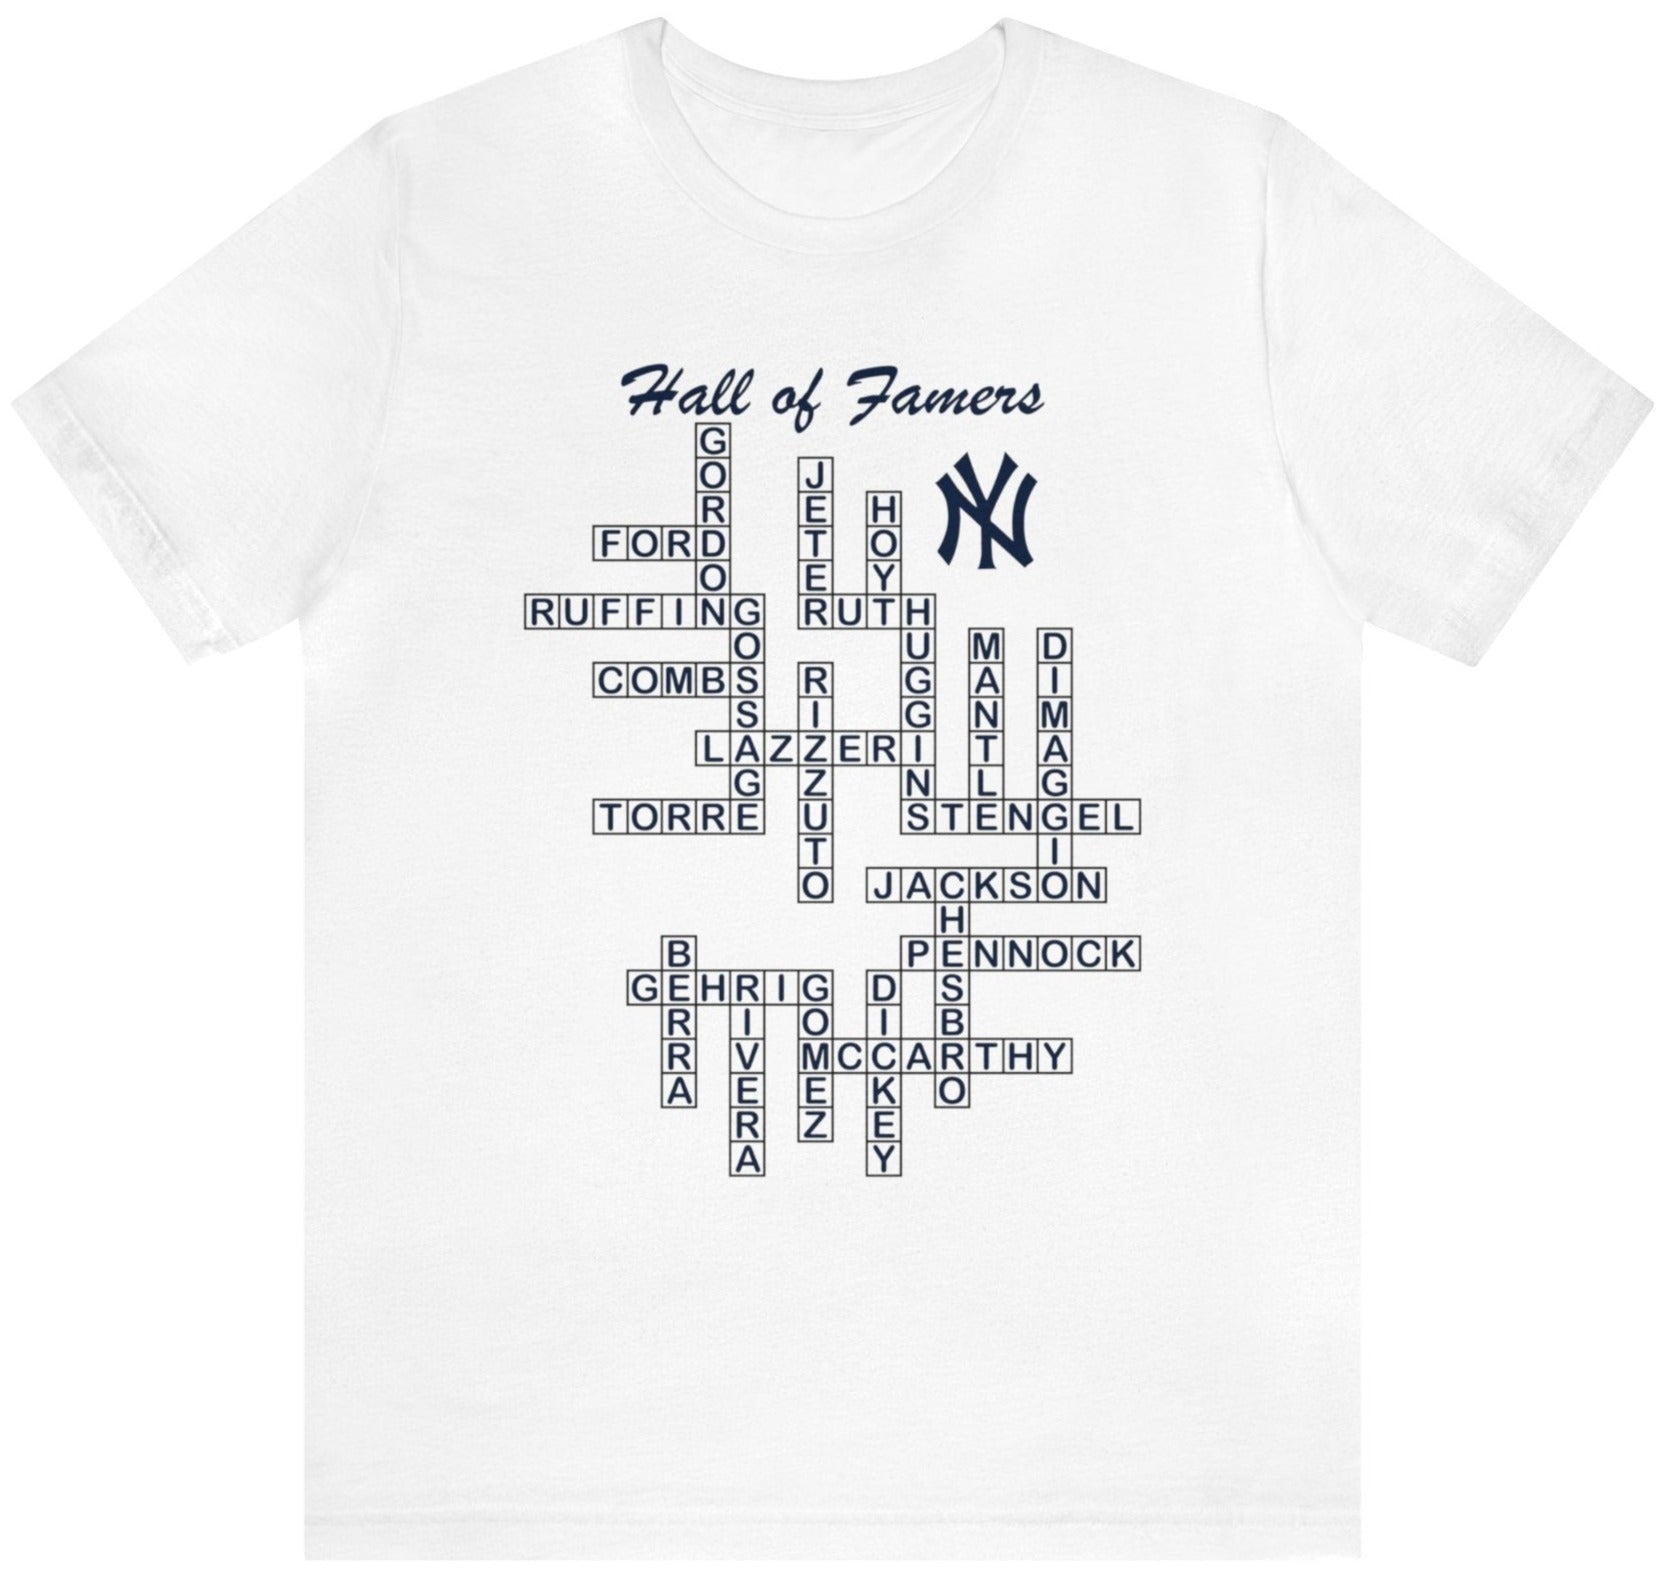 New York Yankees Legends t shirt